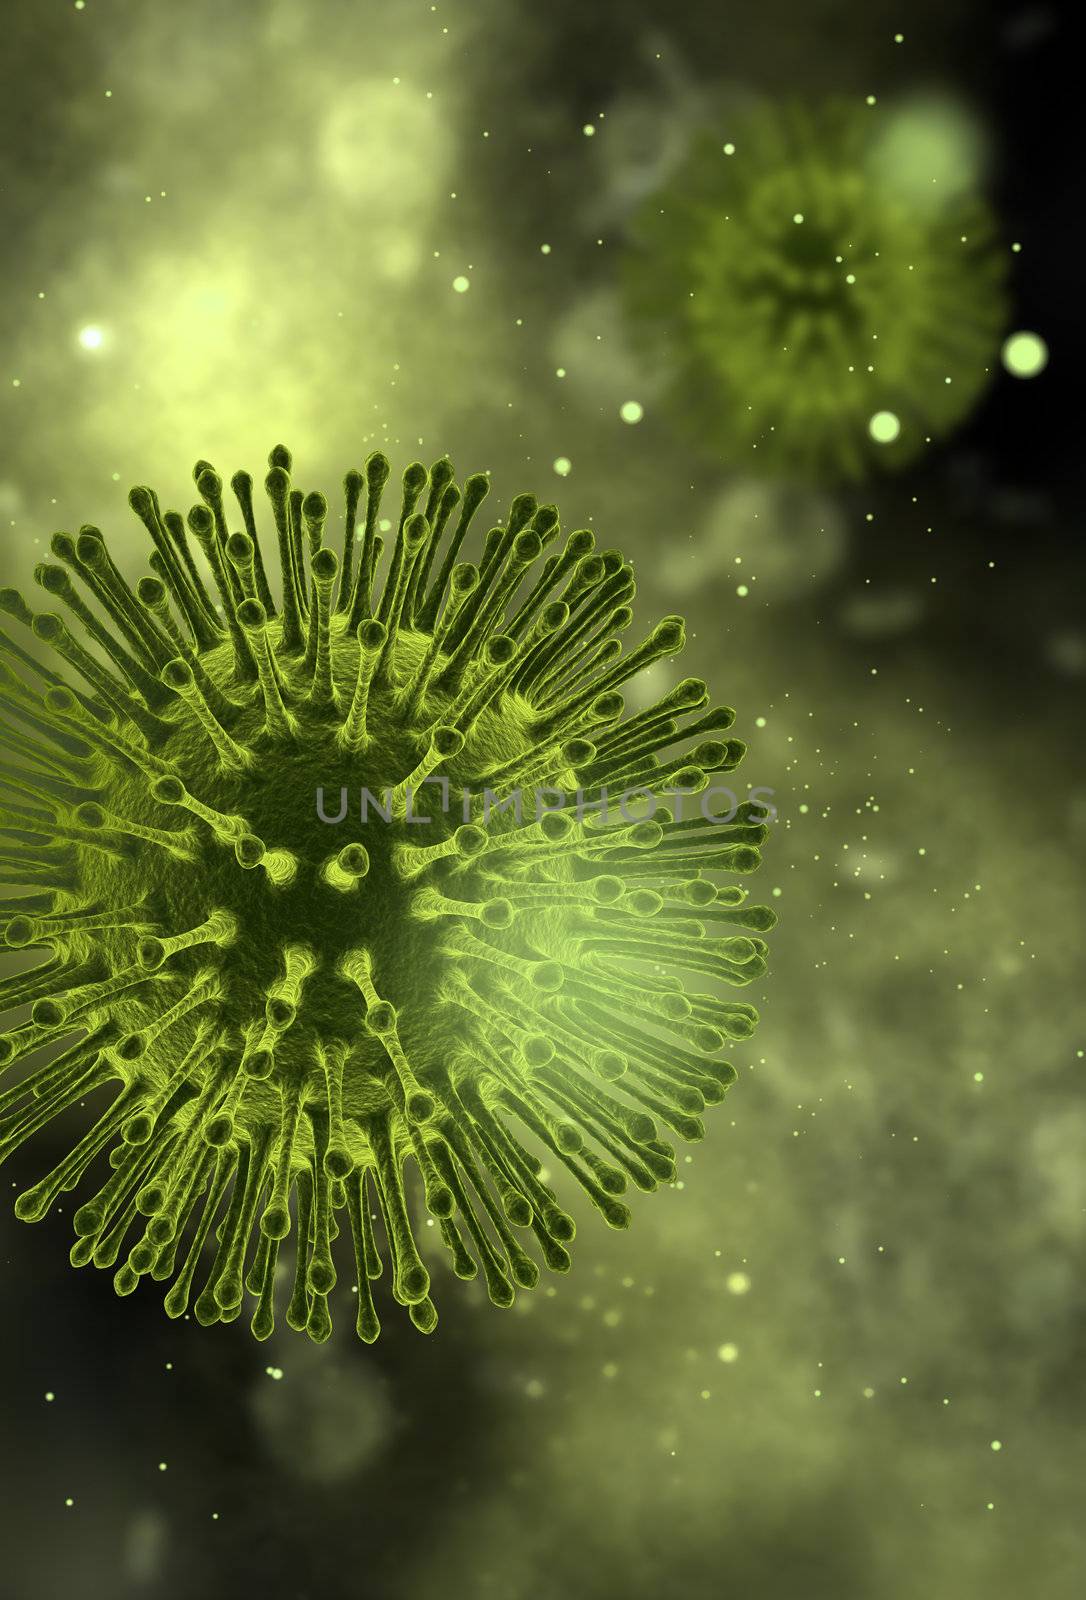 Flu virus by woodoo